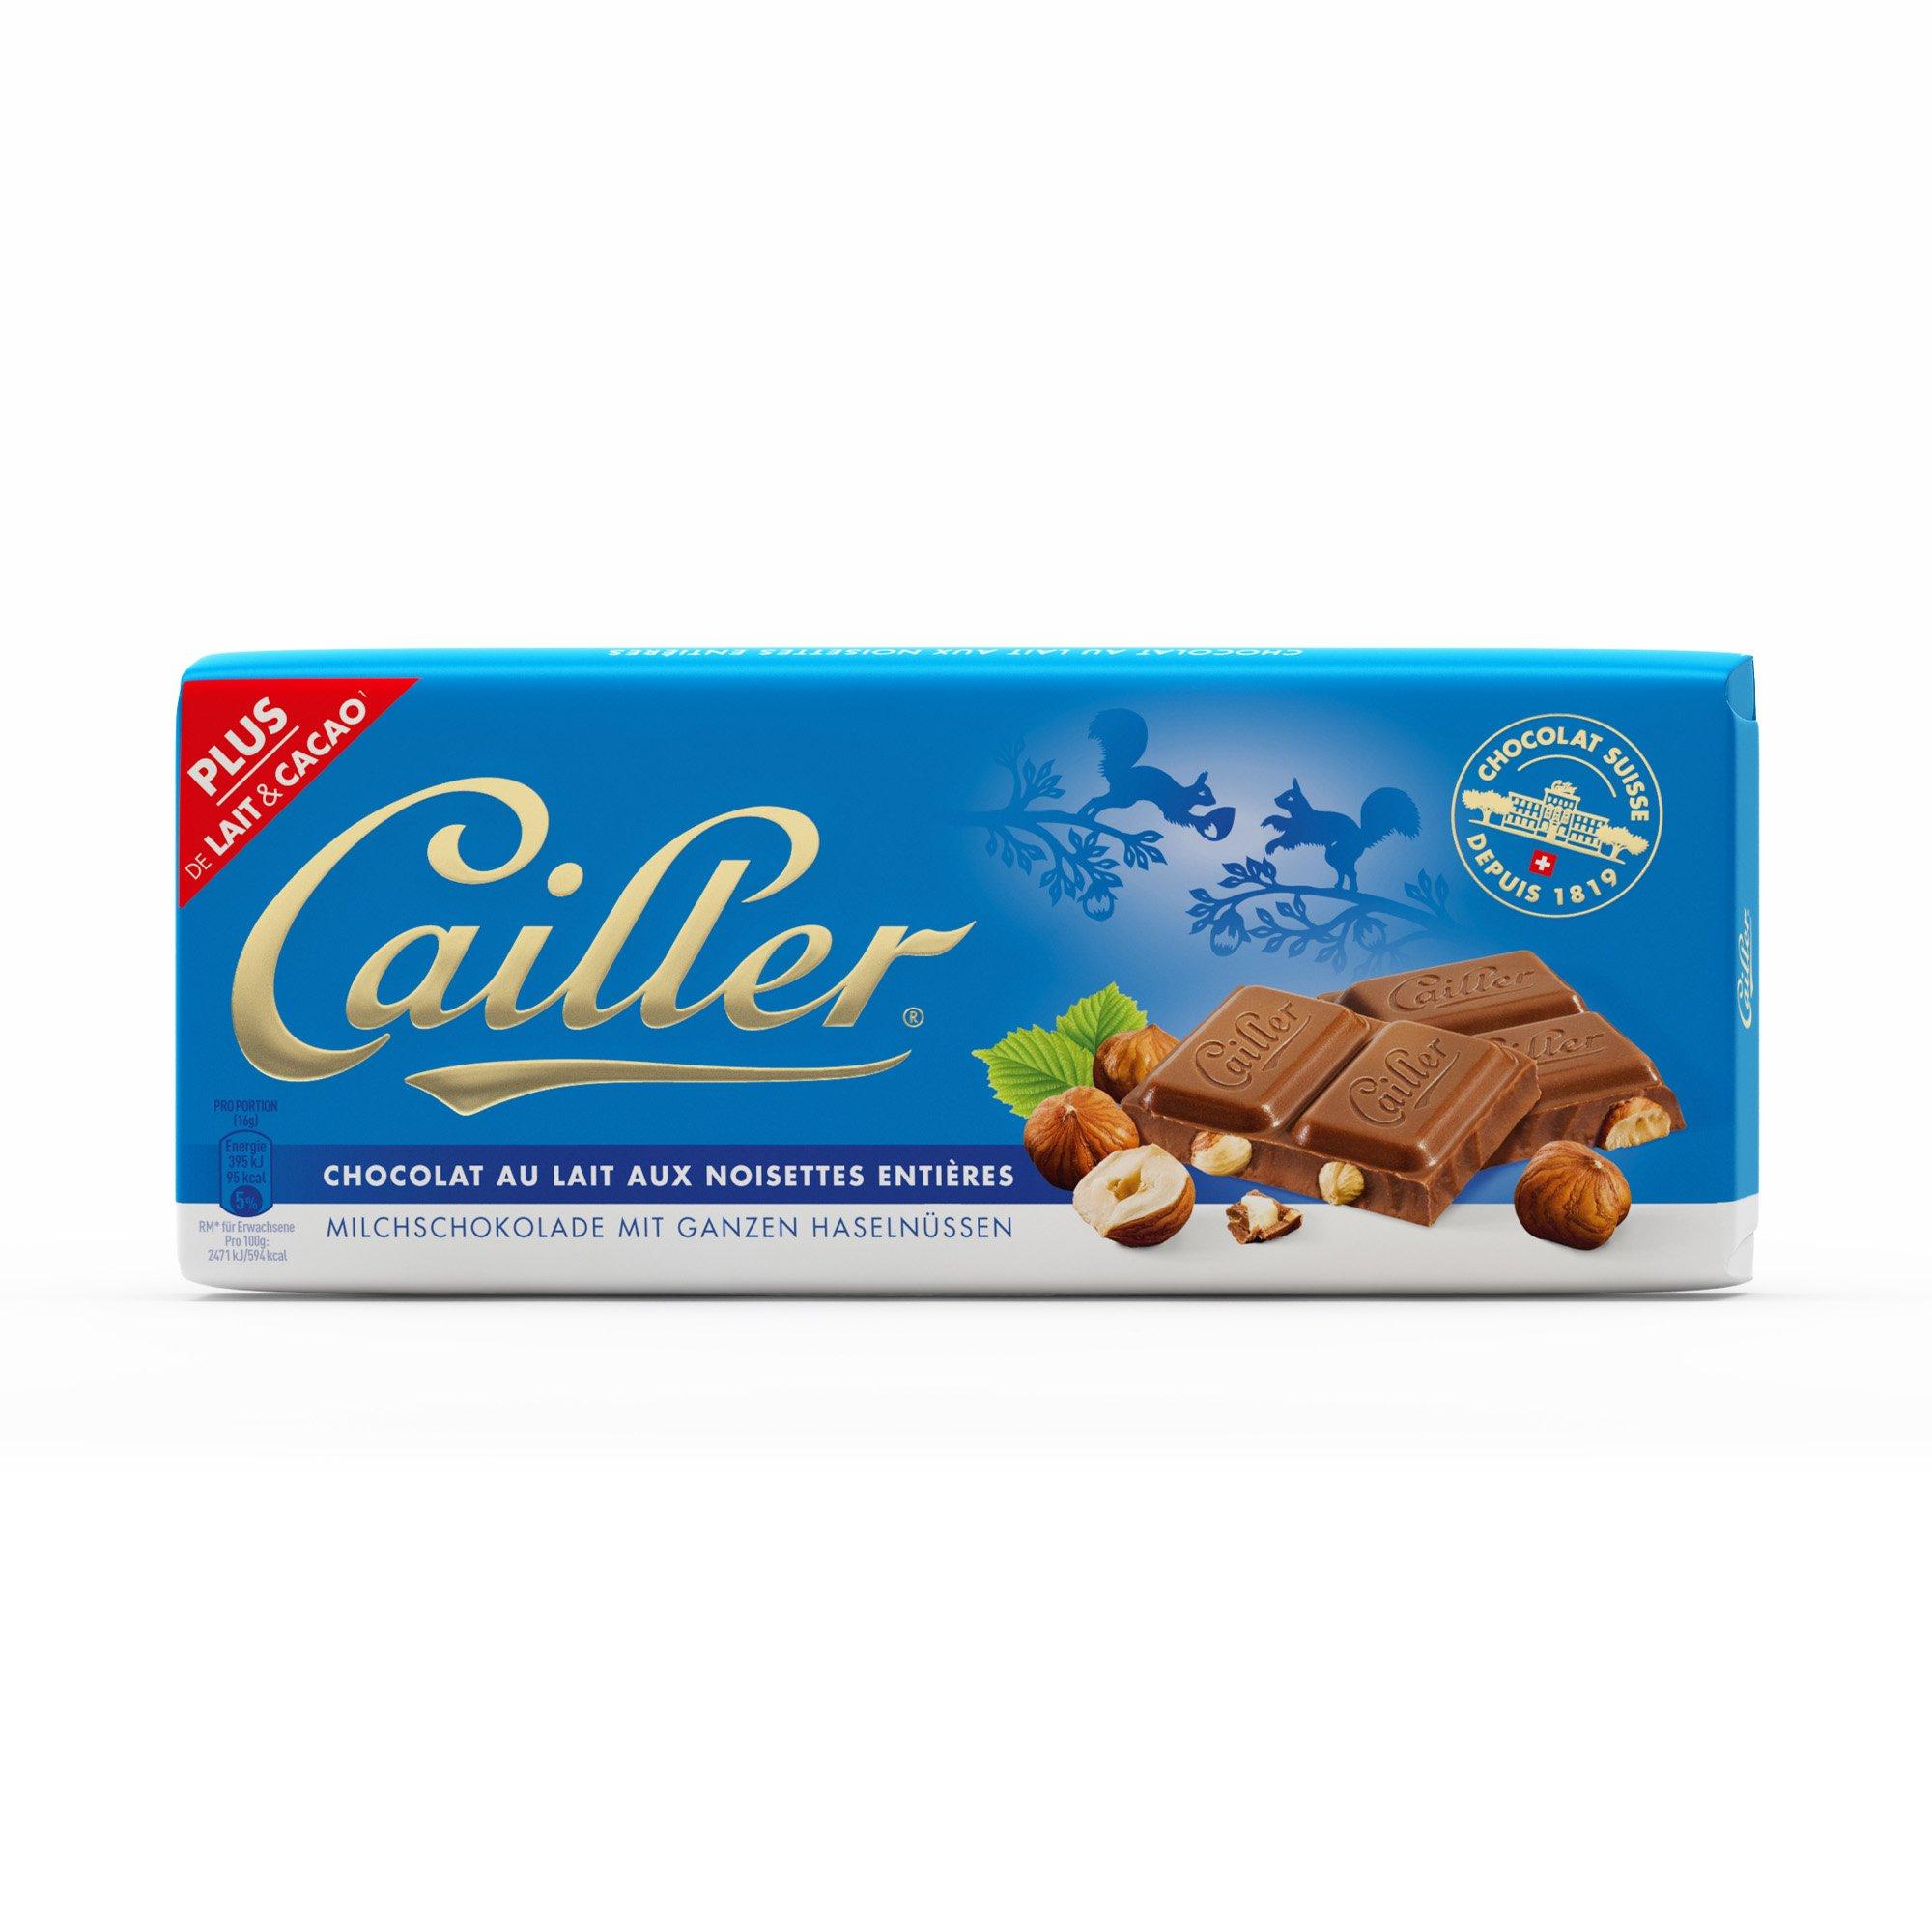 Image of Cailler Milchschokolade mit ganzen Haselnüssen - g#54/100 g